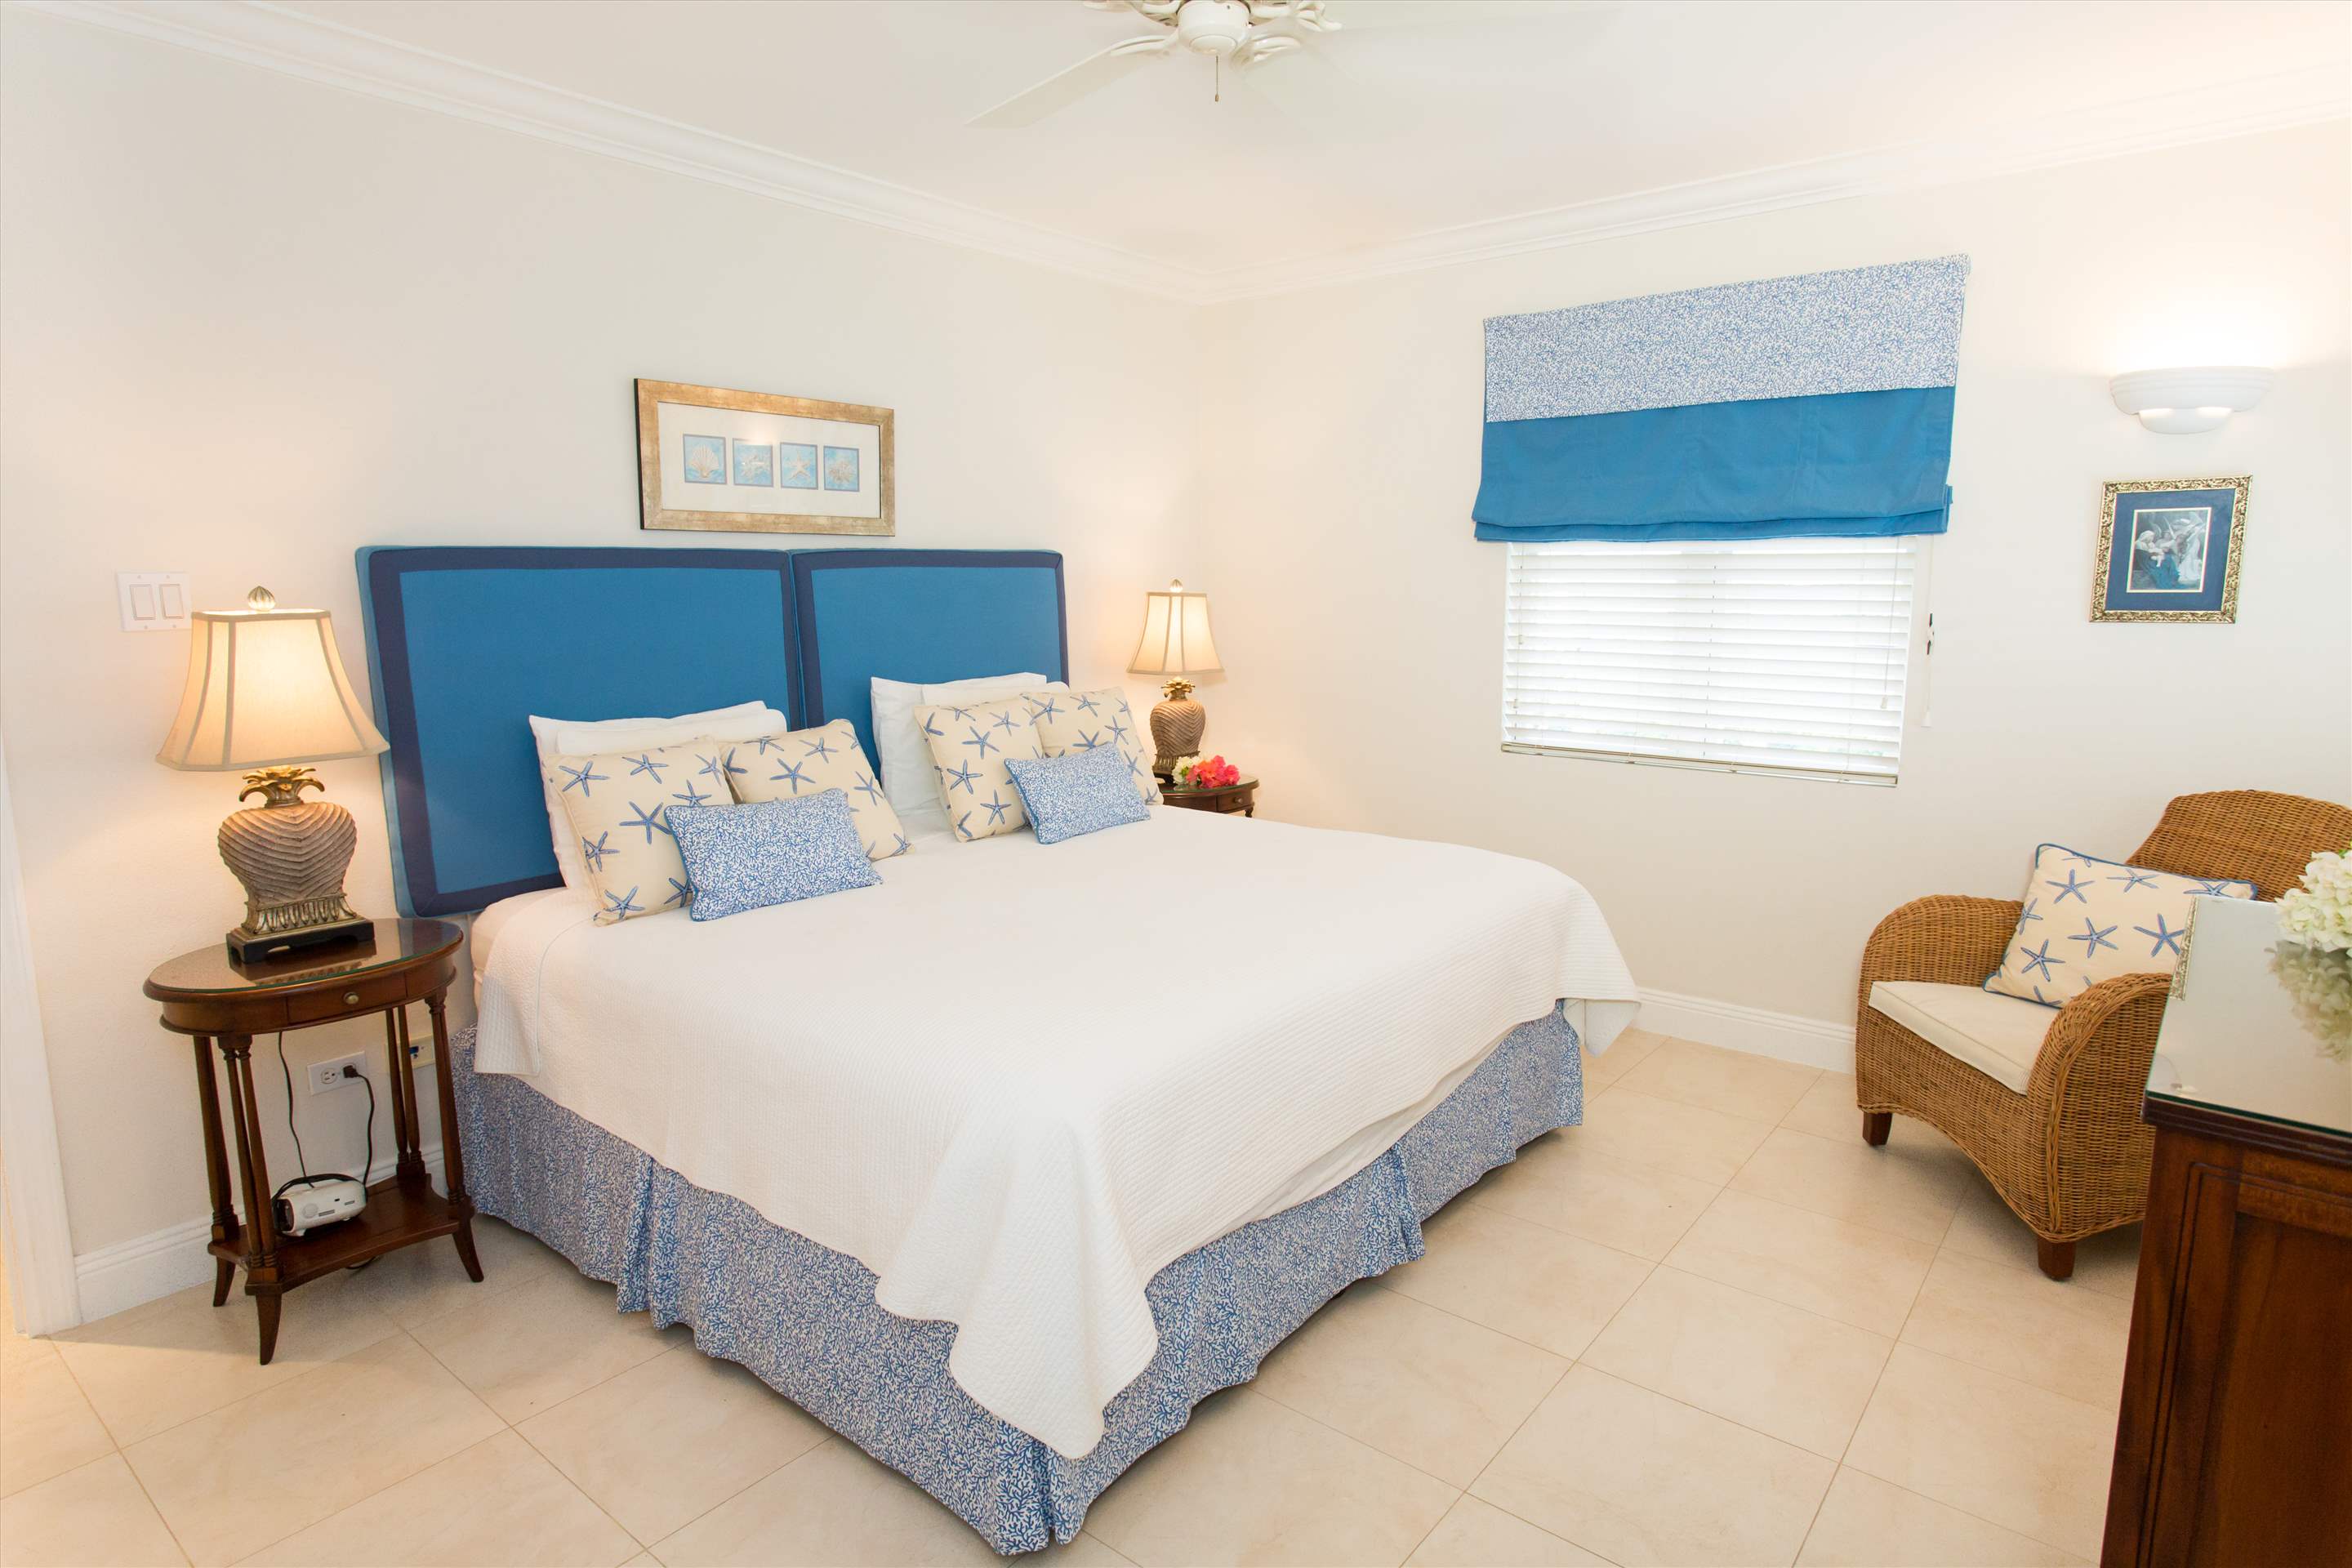 Sandy Hook 21, 3 bedroom, 3 bedroom villa in St. Lawrence Gap & South Coast, Barbados Photo #11